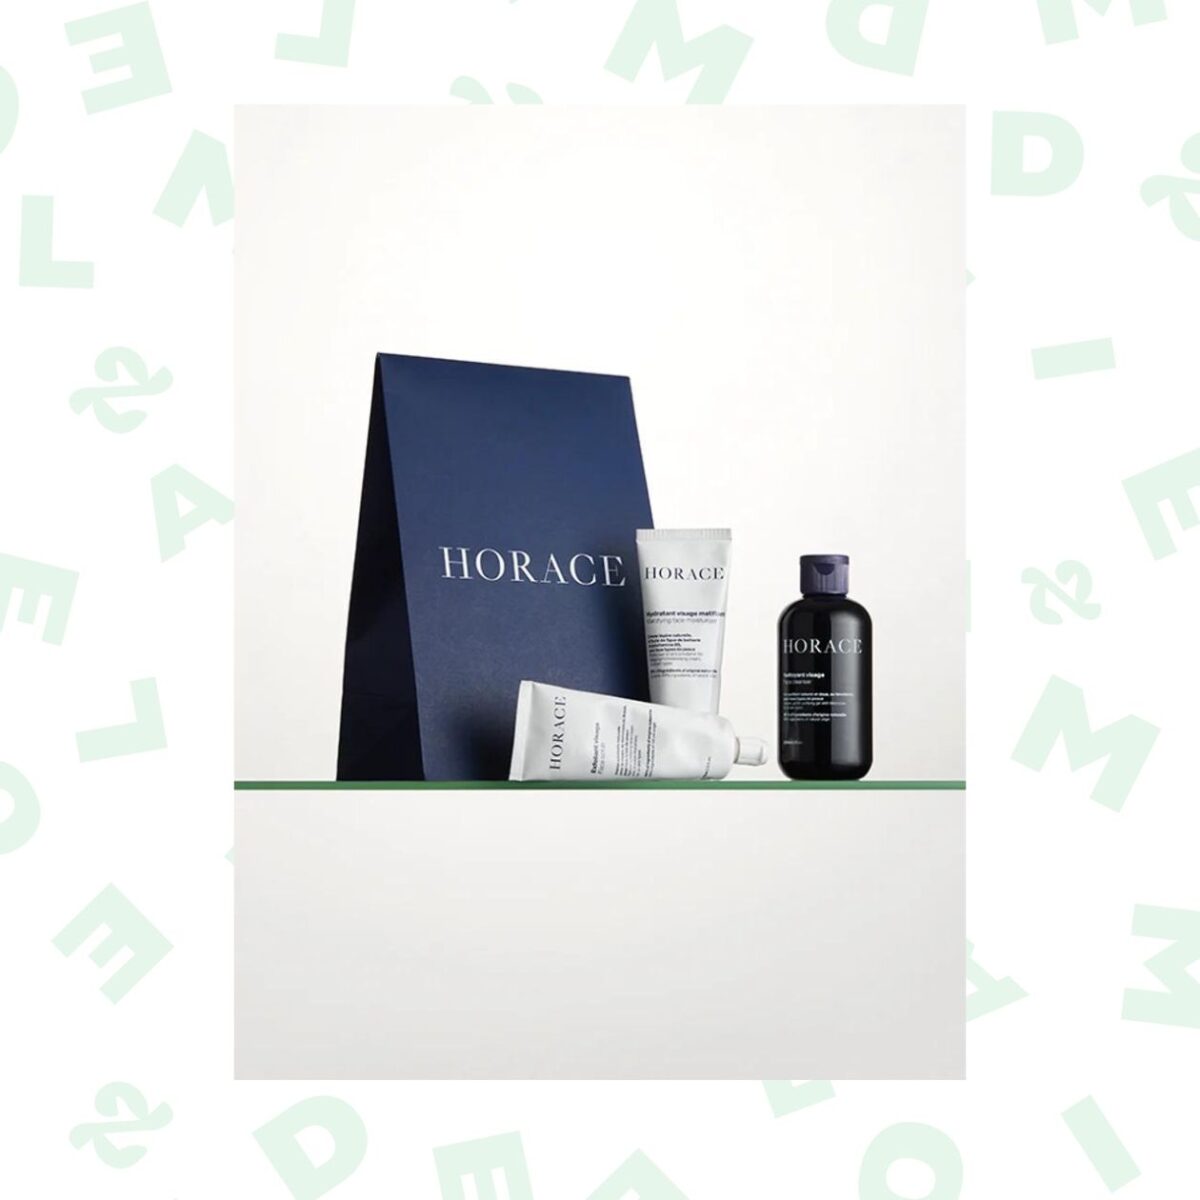 Kit cadeau visage (nettoyant purifiant, hydratant matifiant, et gommage doux) — Horace — 36€.